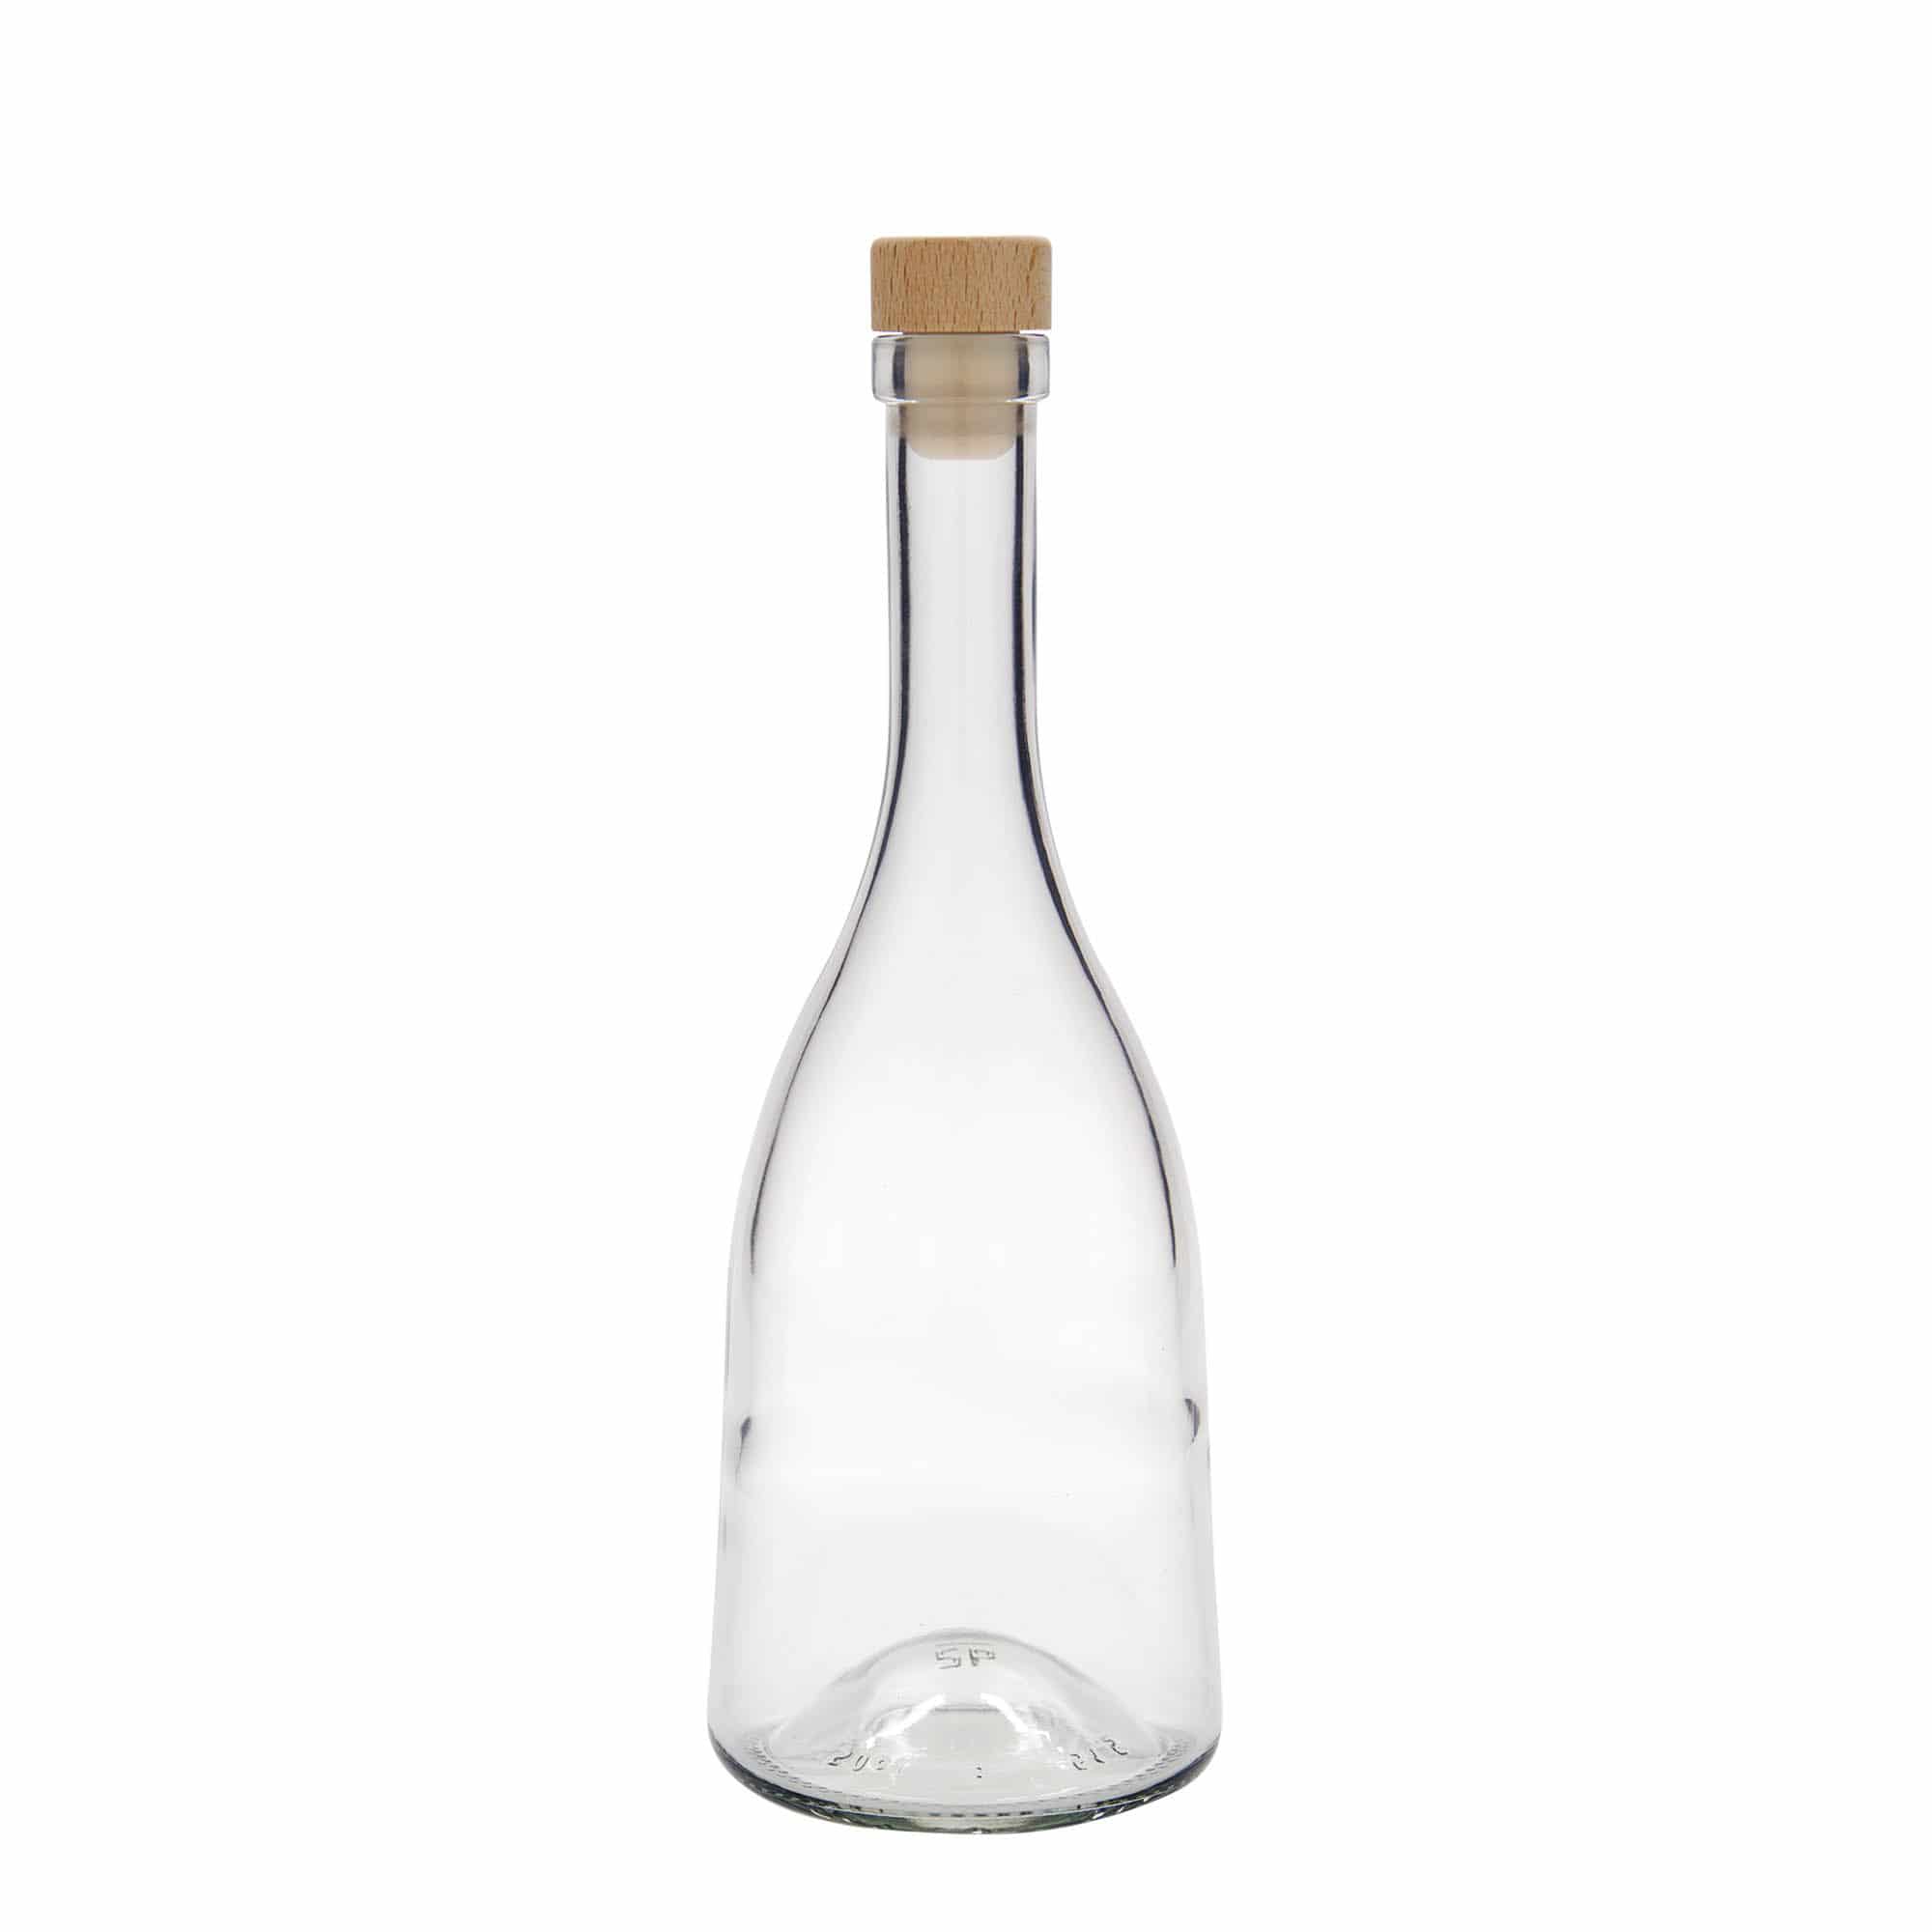 500 ml glass bottle 'Rustica', closure: cork